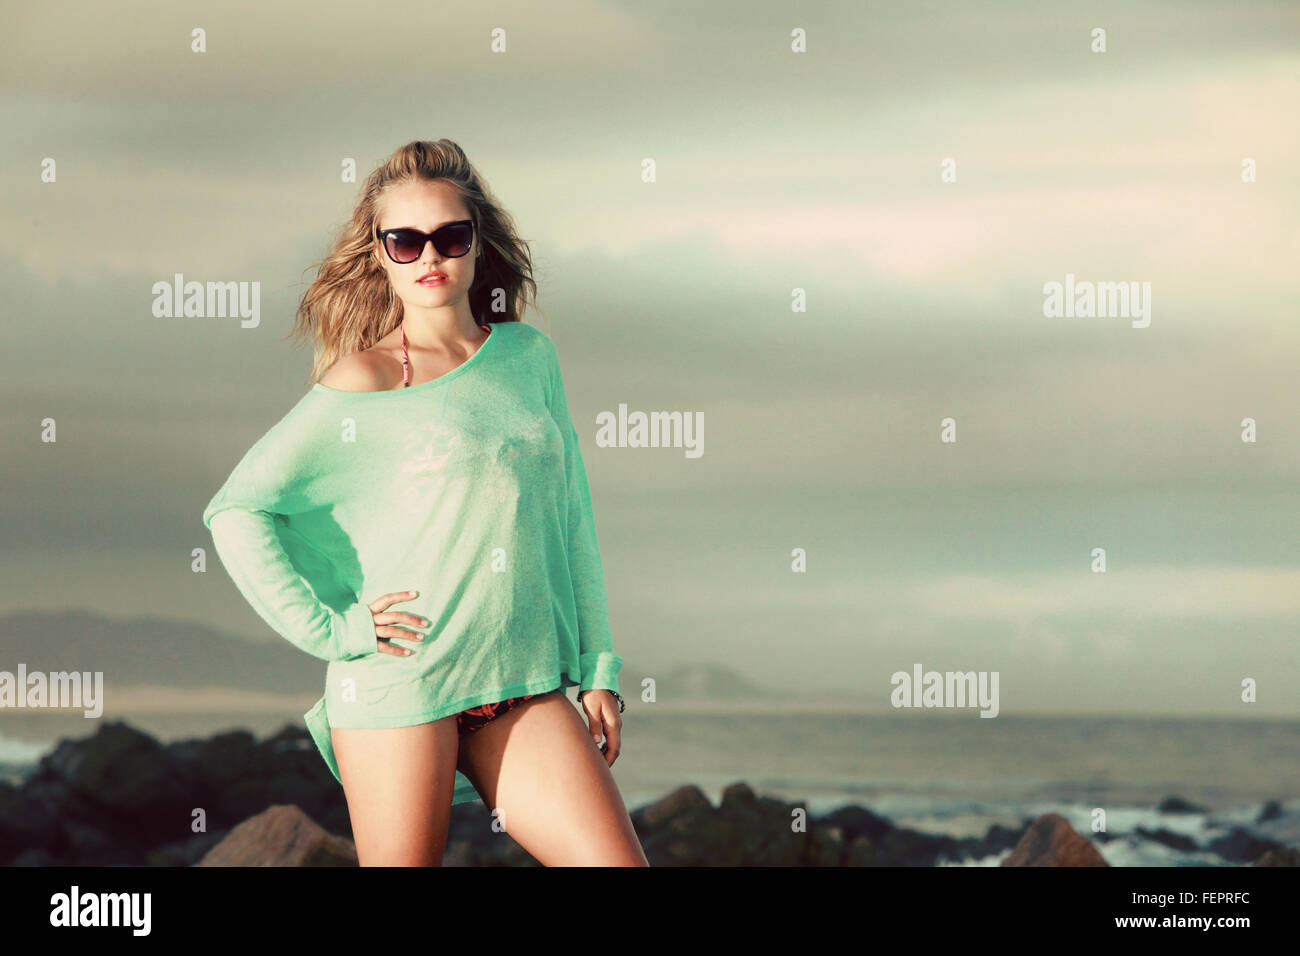 Eine attraktive junge blonde Dame, die mit einem grünen Trikot steht auf einem Felsen am Strand, wo die Flut in gekommen ist. Stockfoto